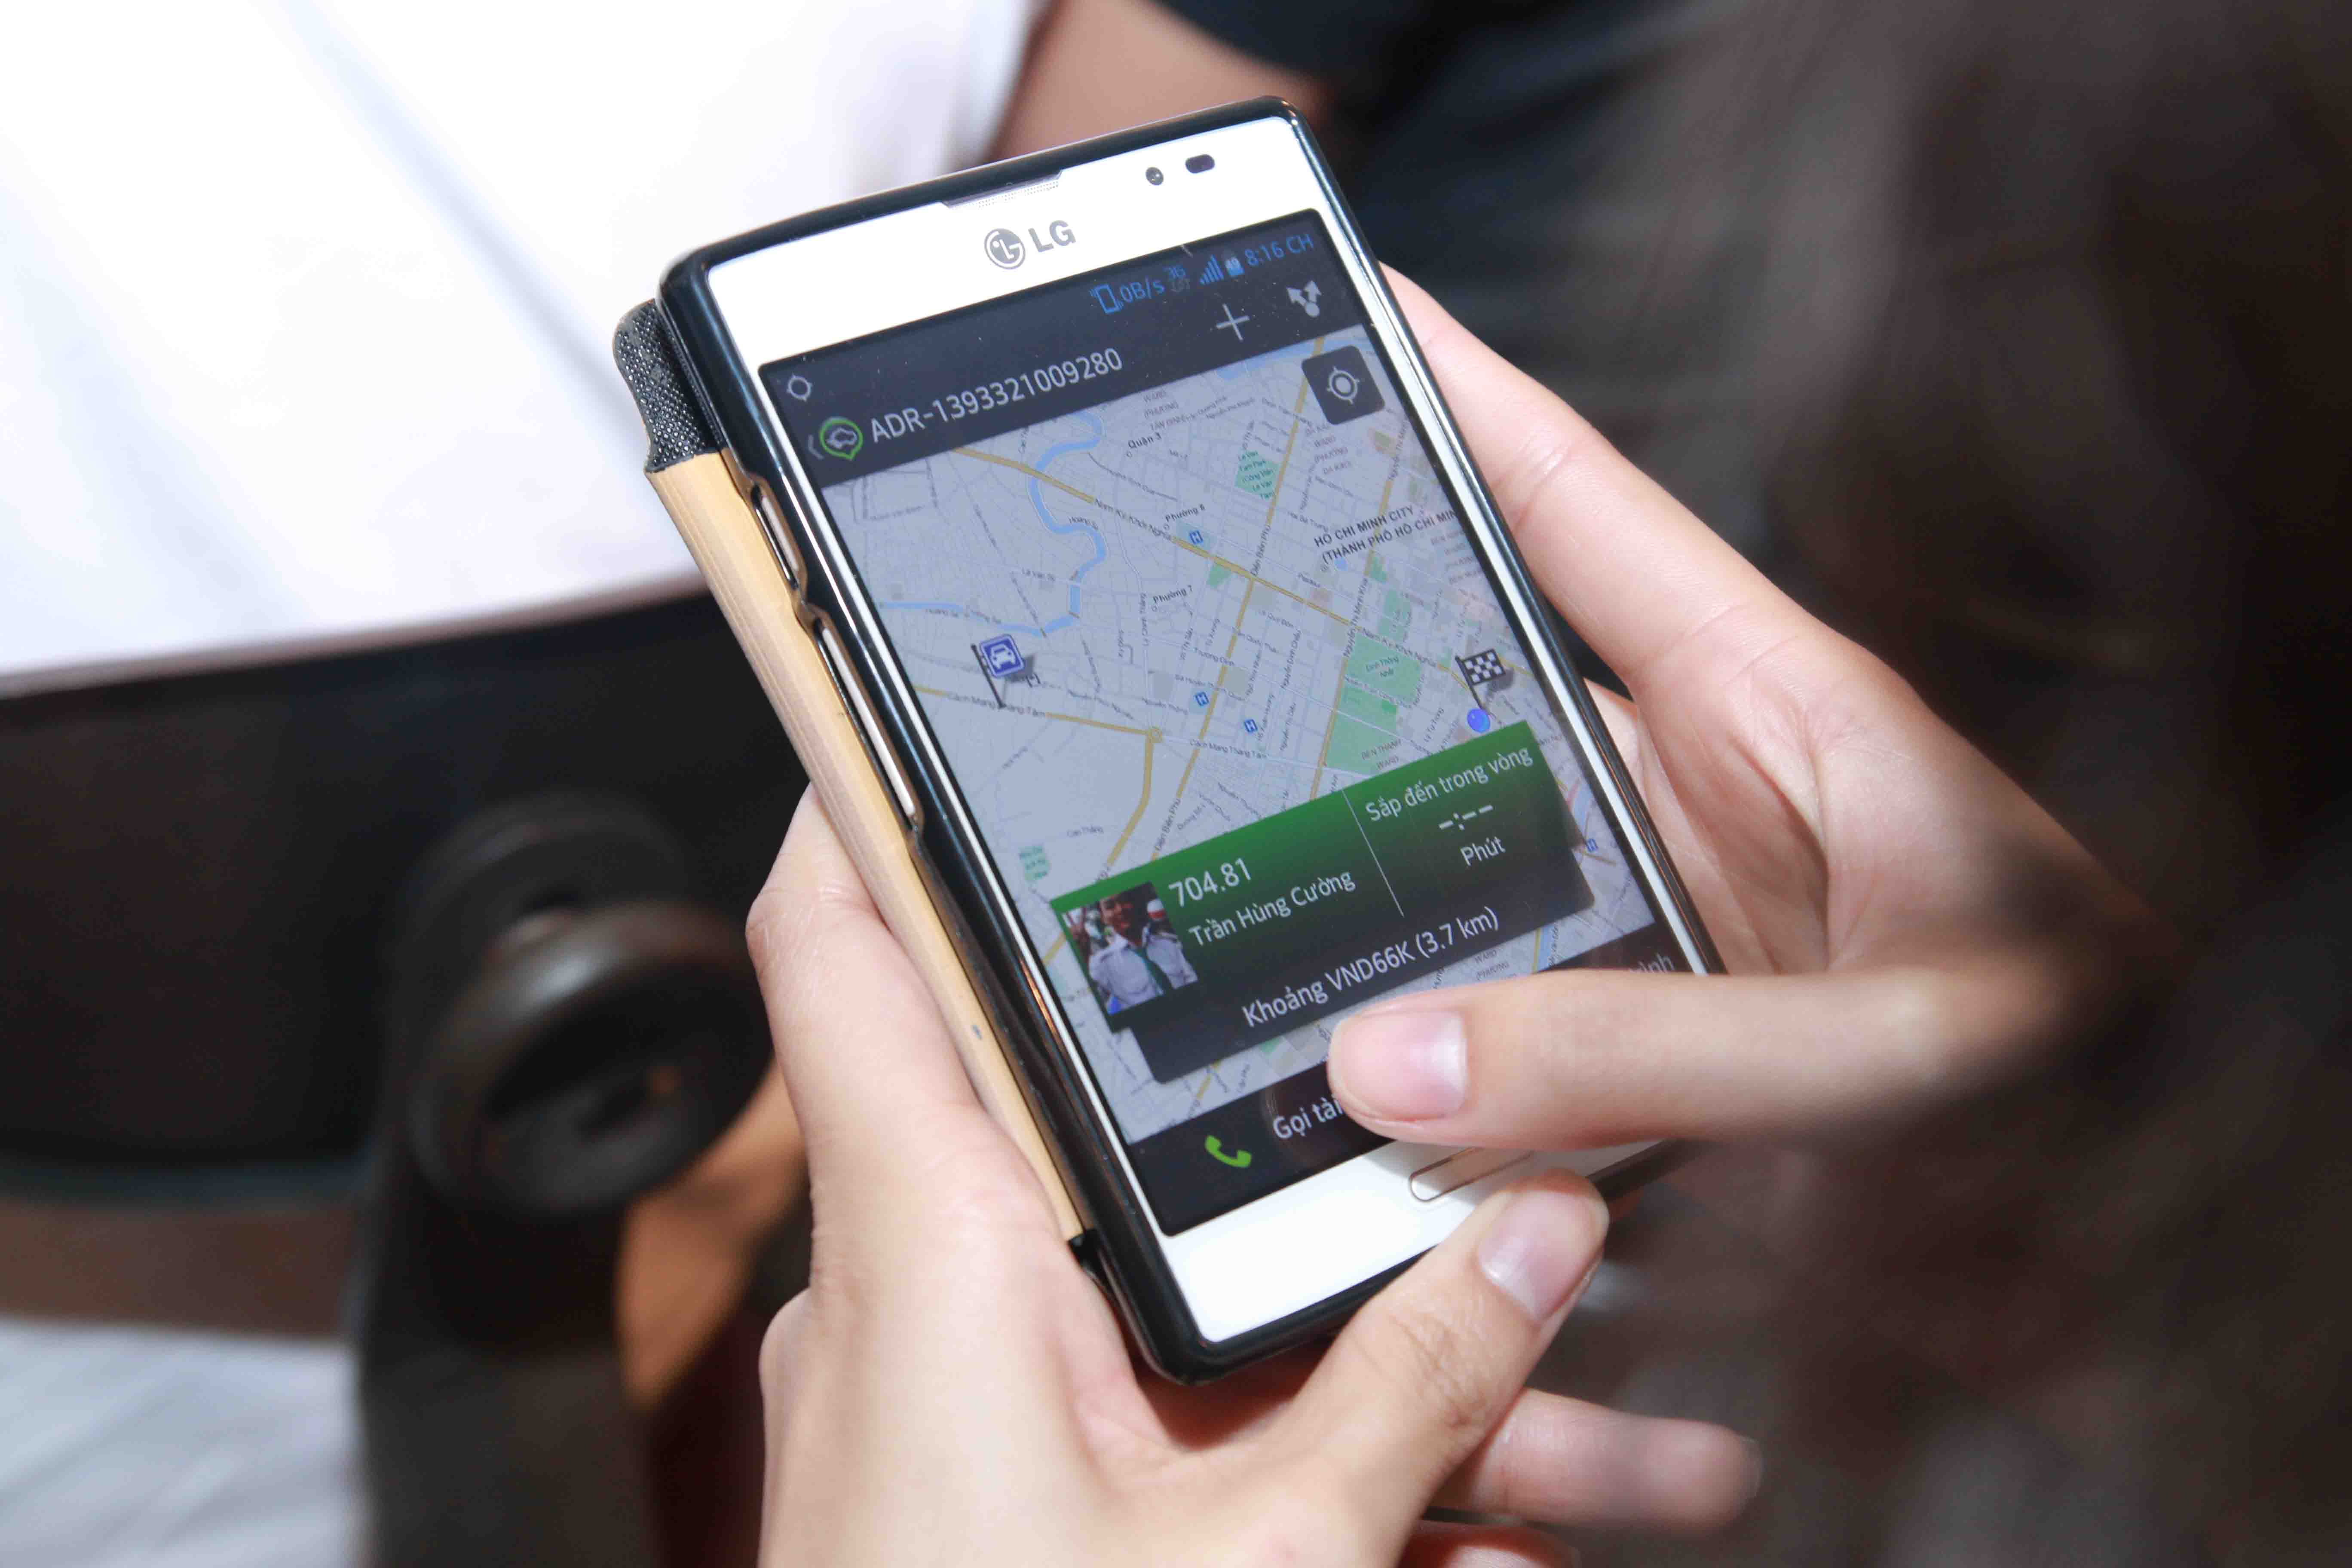 Điểm nổi bật của ứng dụng GrabTaxi là hành khách sẽ nhận được xác nhận đặt xe trong vòng 1 phút